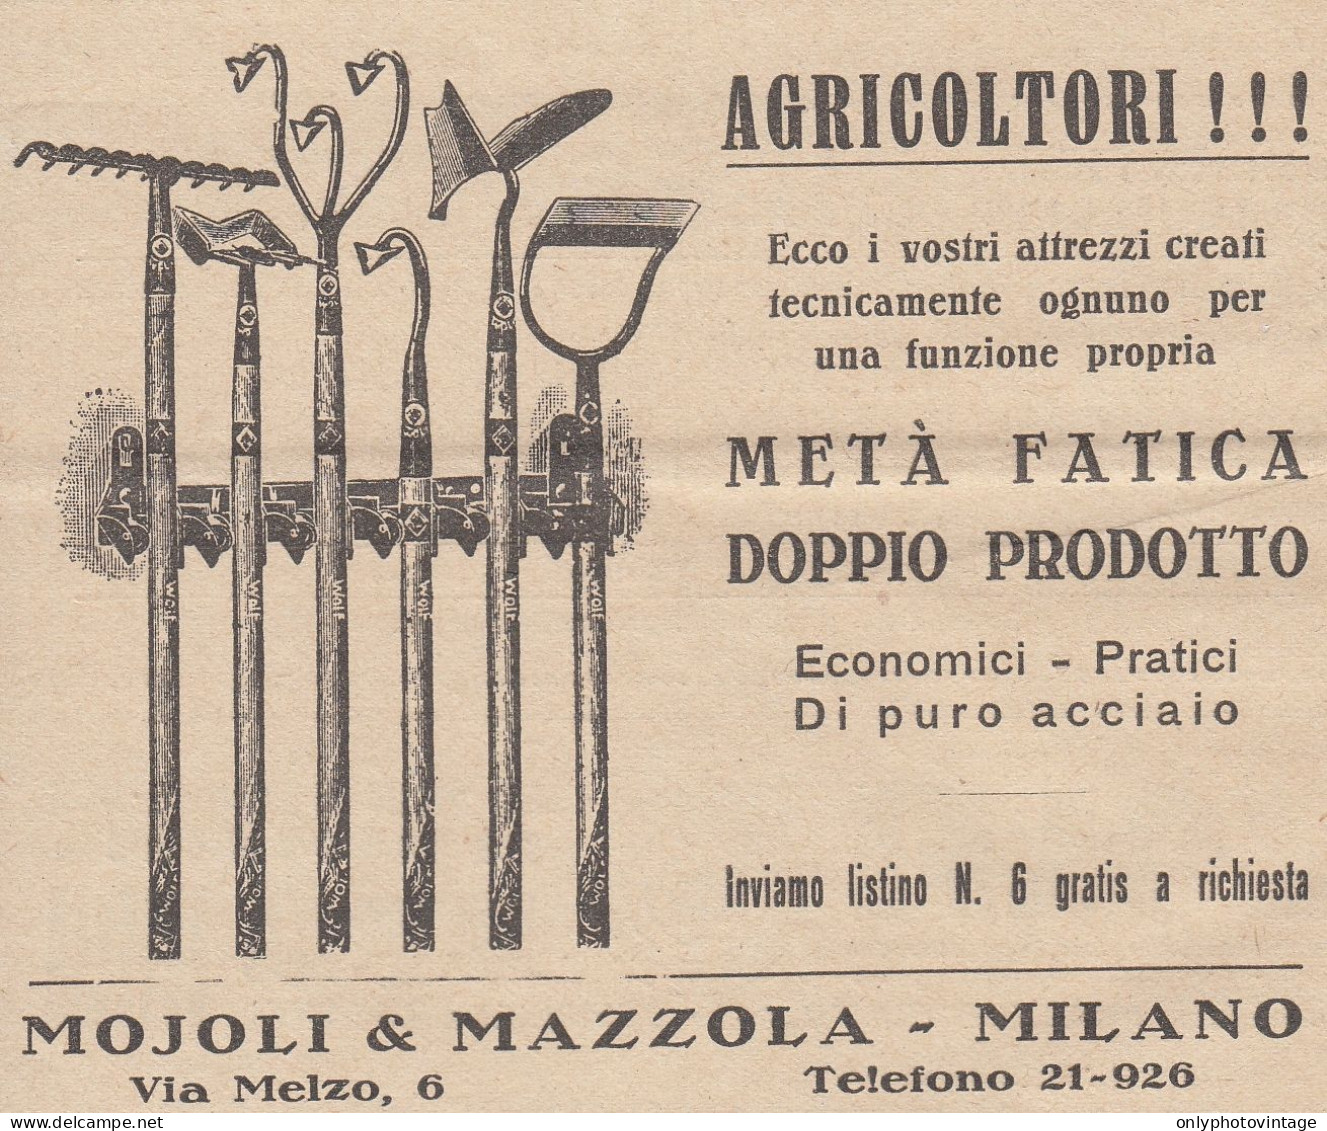 Attrezzi Agricoli Mojoli & Mazzola - Milano - 1931 Pubblicità - Vintage Ad - Advertising